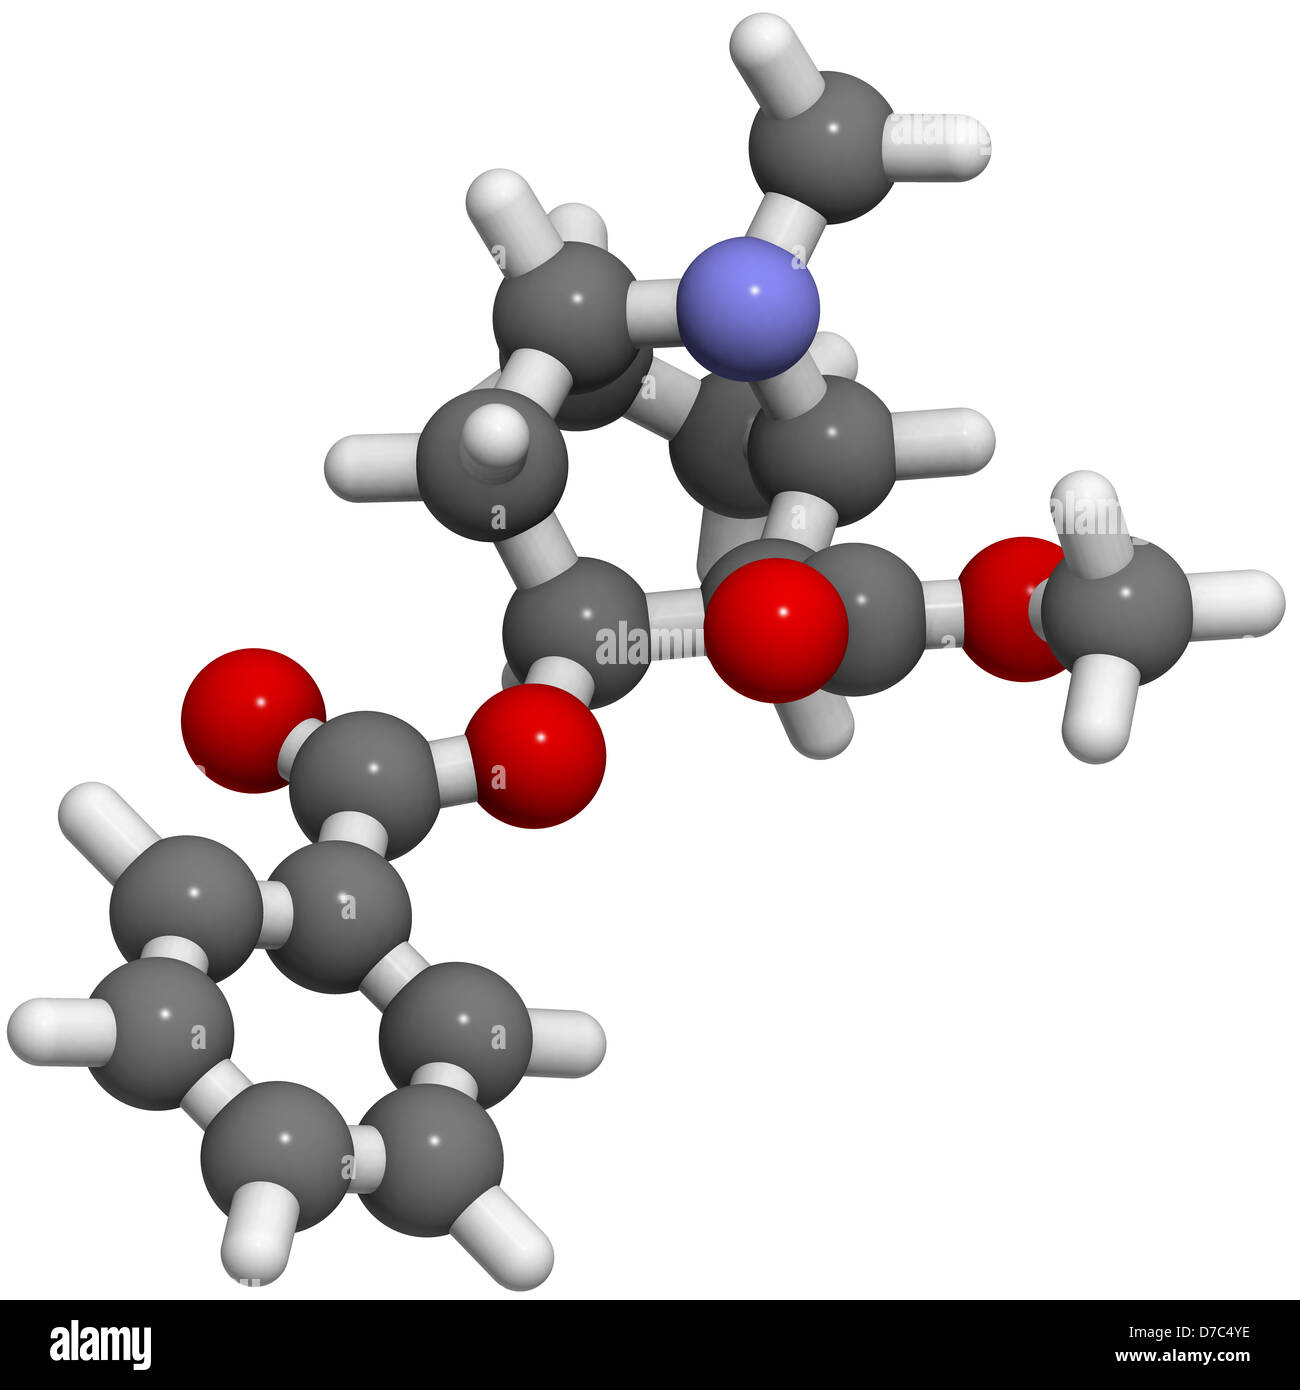 Kokain-Droge, Molekülmodell. Atome werden als Kugeln mit konventionellen Farbkodierung dargestellt. Stockfoto